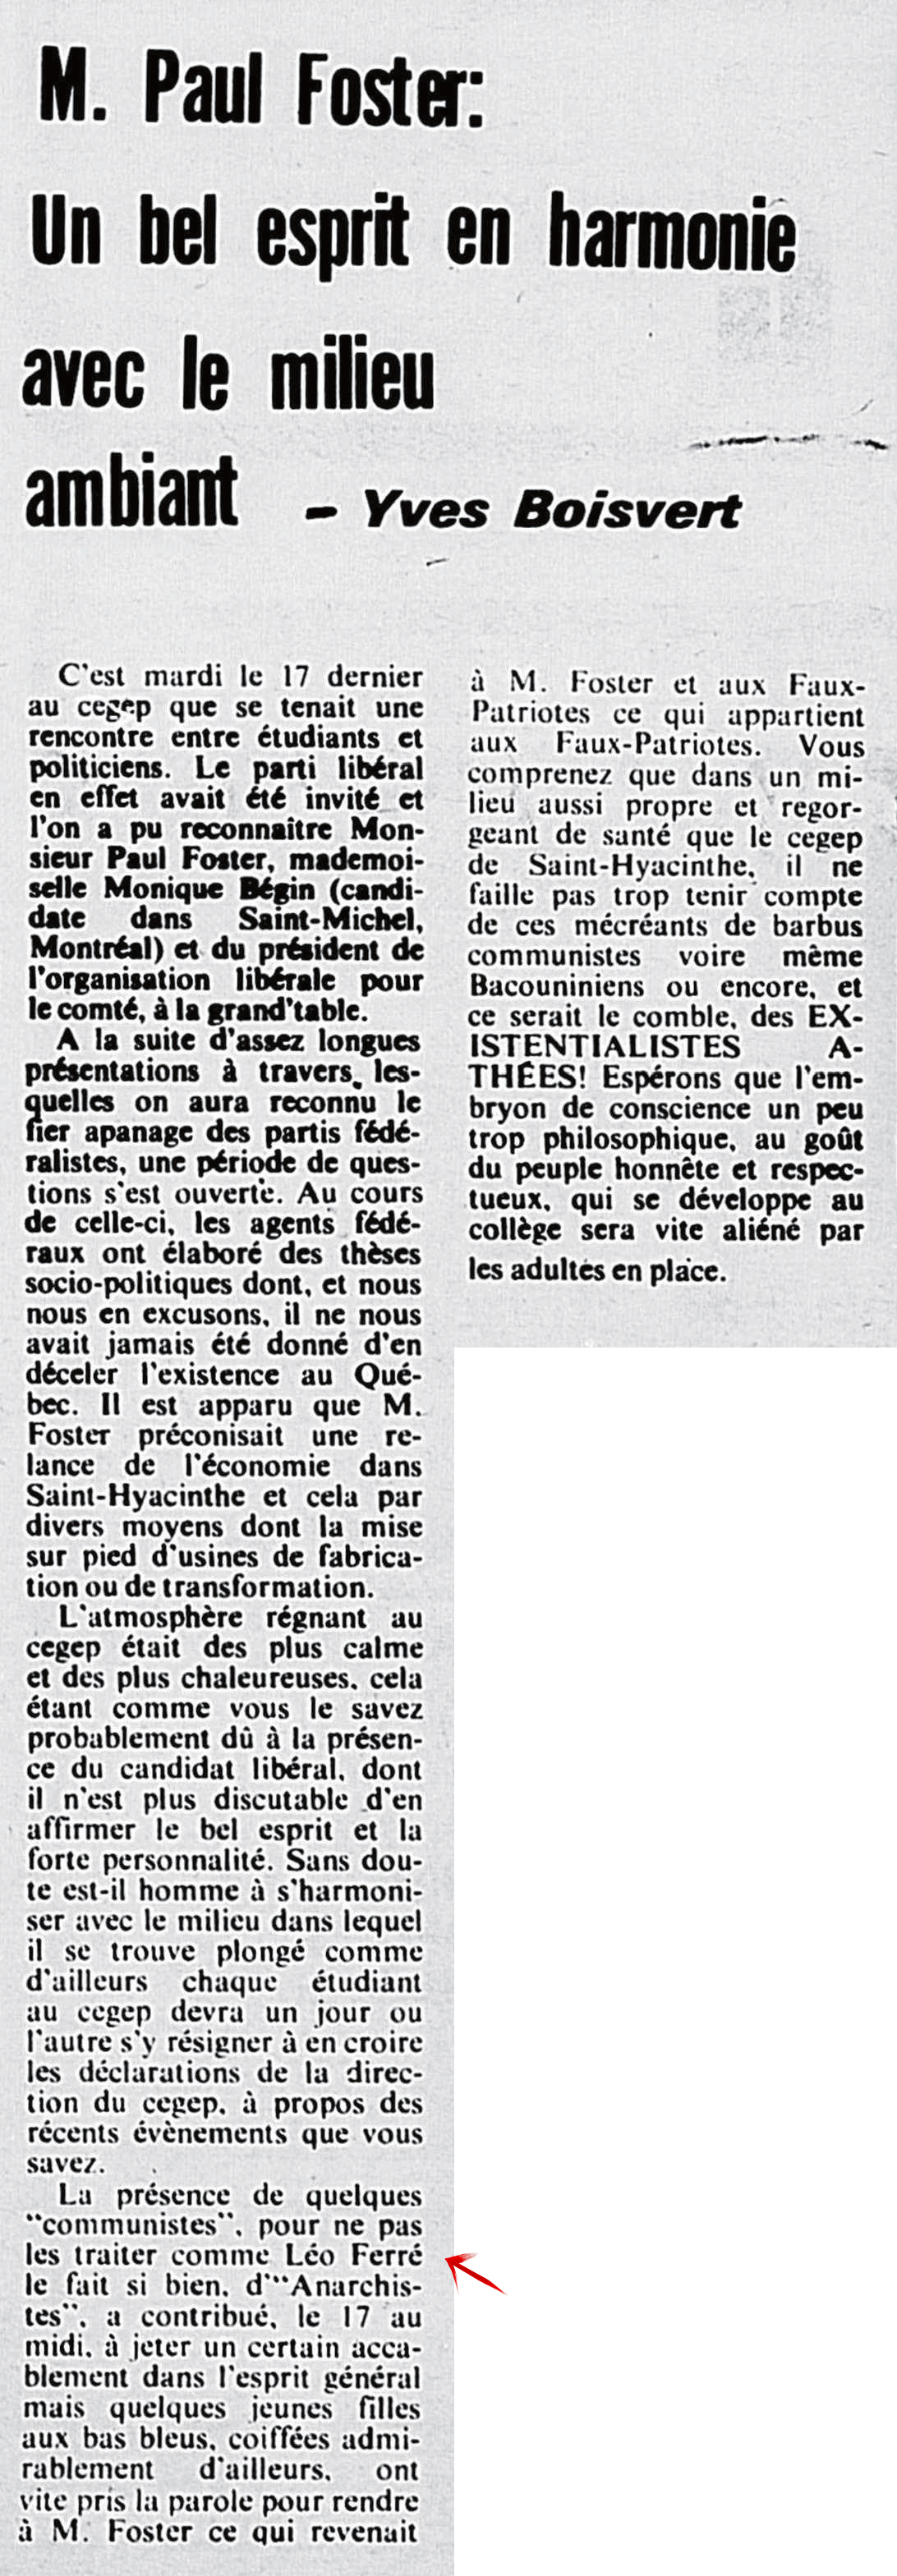 Léo Ferré - Le Nouveau clairon, 1971-1990 (Saint-Hyacinthe), mercredi 25 octobre 1972